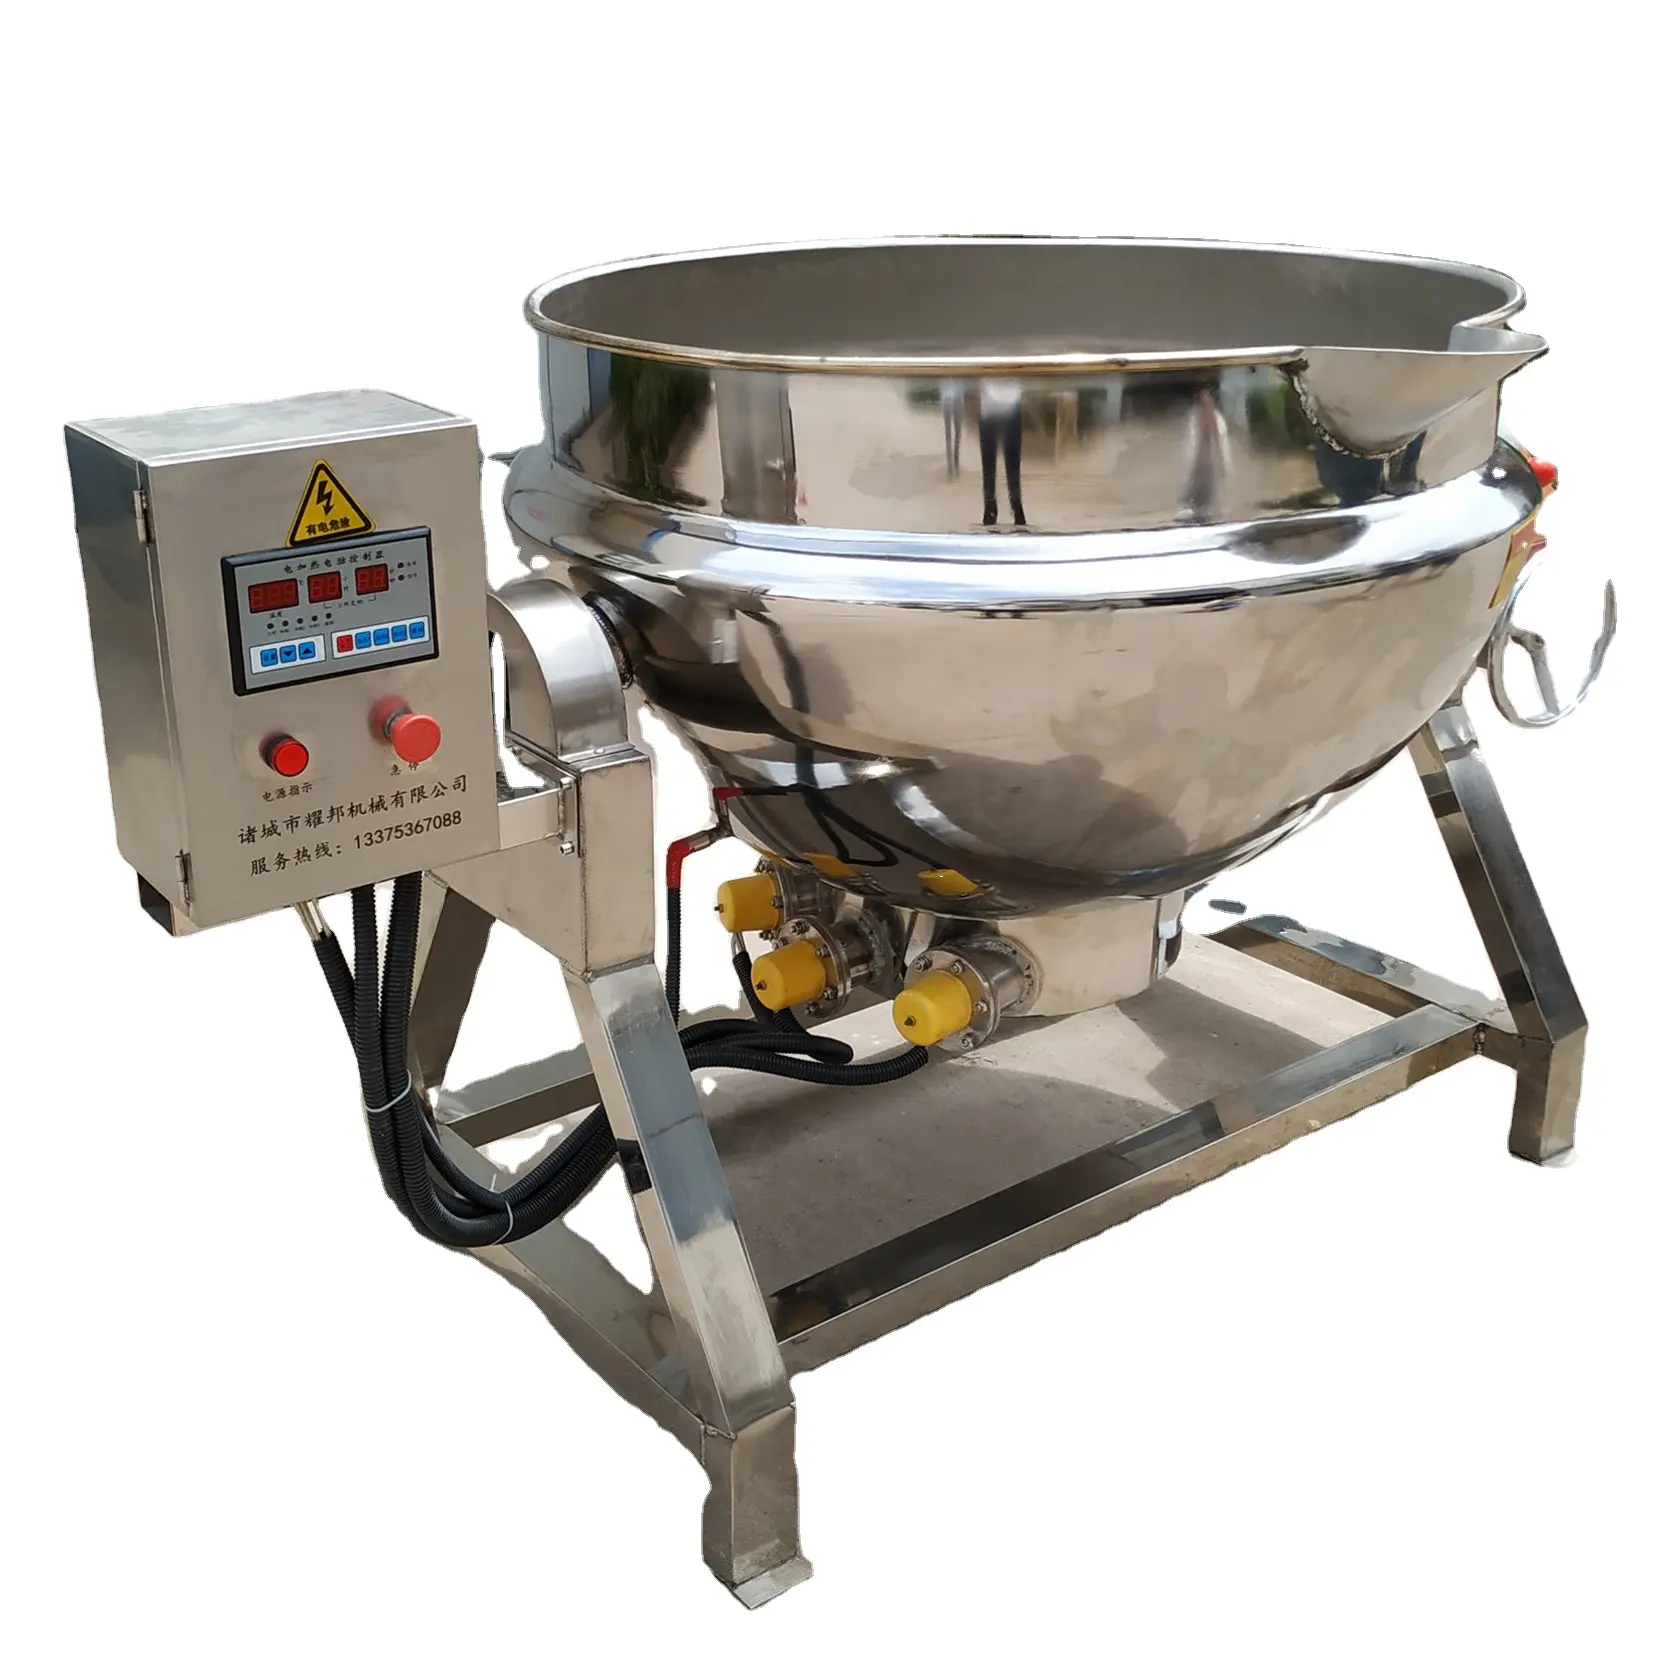 Chaleira cozinhada de 500 litros com fermentação, utensílios para preparar alimentos, frutas, máquinas de mistura com agitador